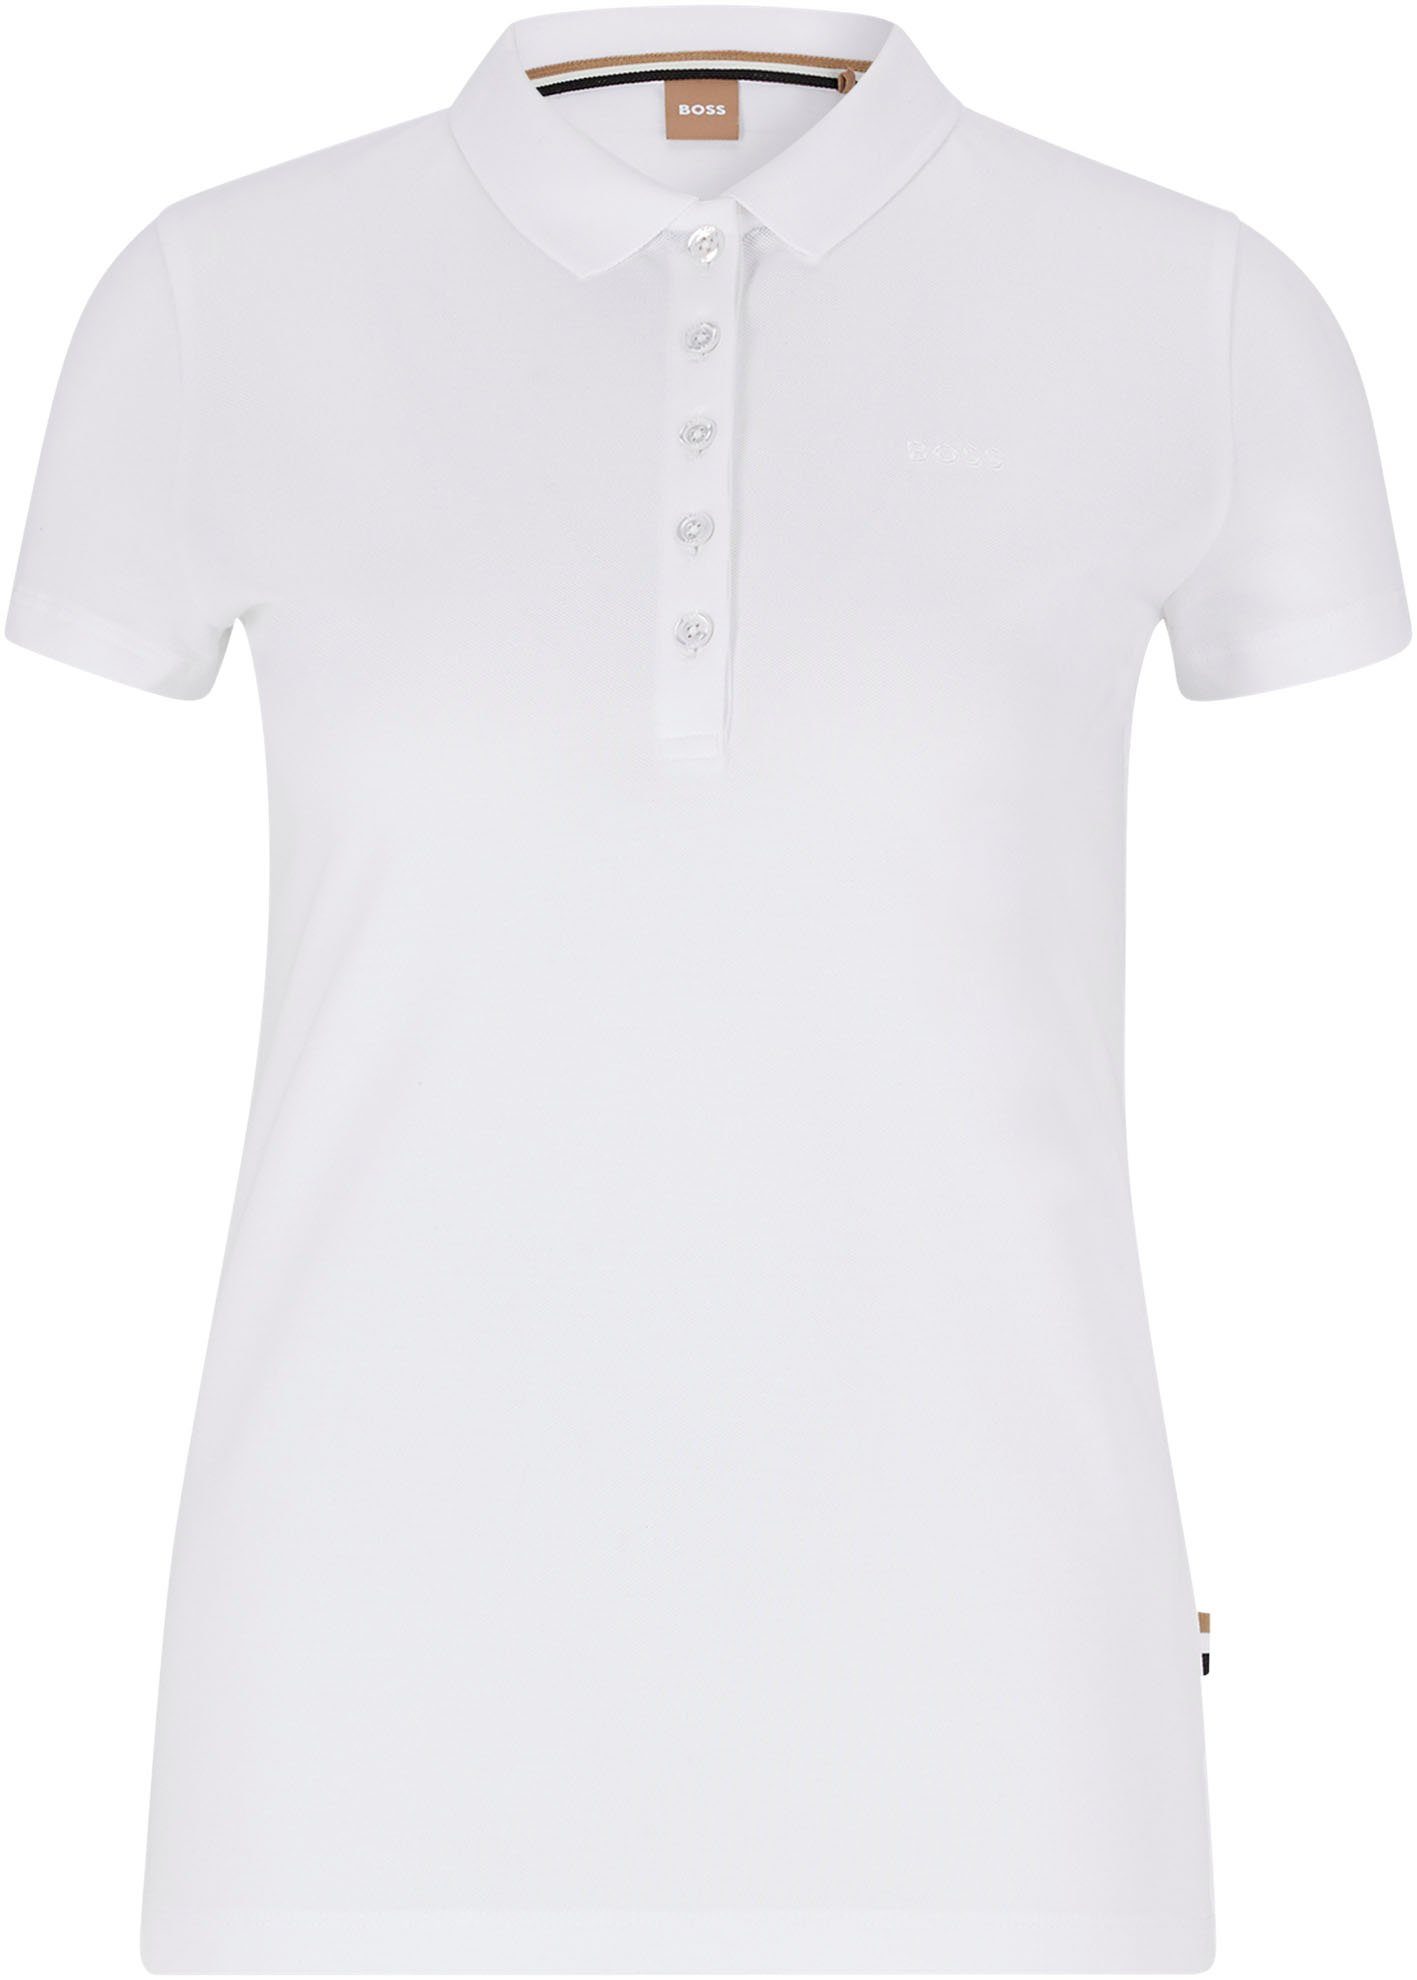 C_Epola White ORANGE Poloshirt mit BOSS BOSS-Stickerei